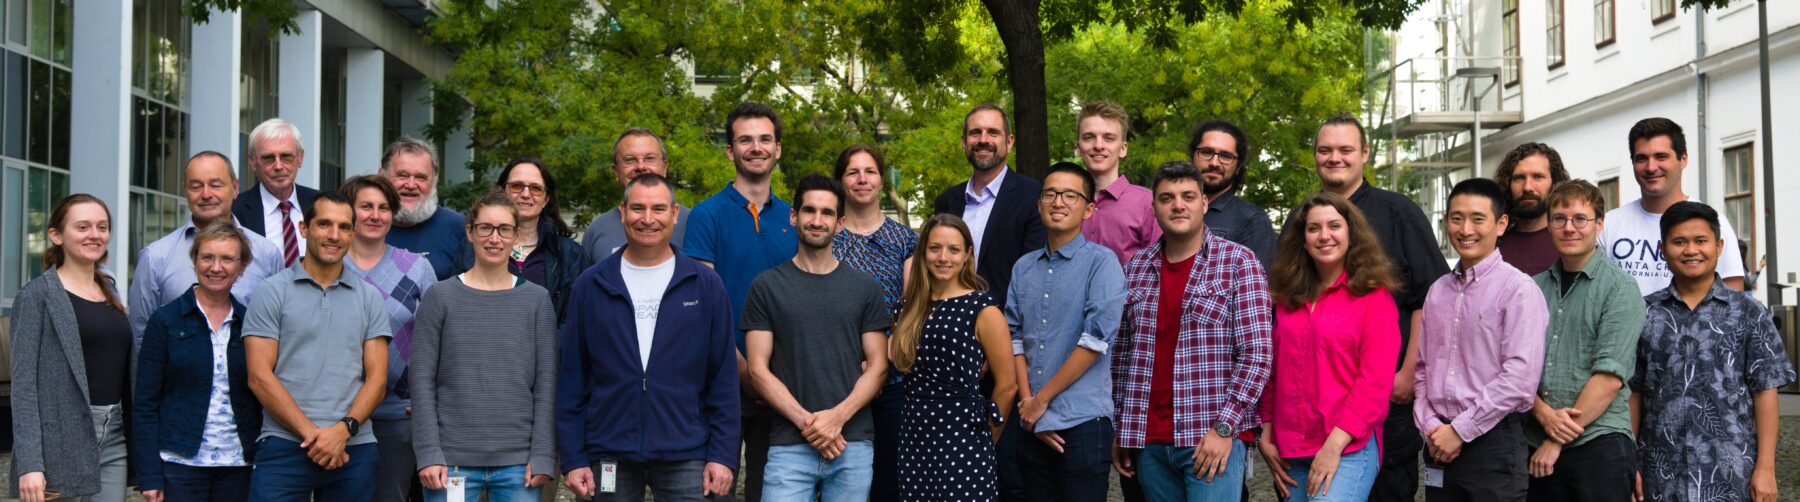 Gruppenfoto aller Mitarbeiter des Instituts für Leichtbau und Struktur-Biomechanik